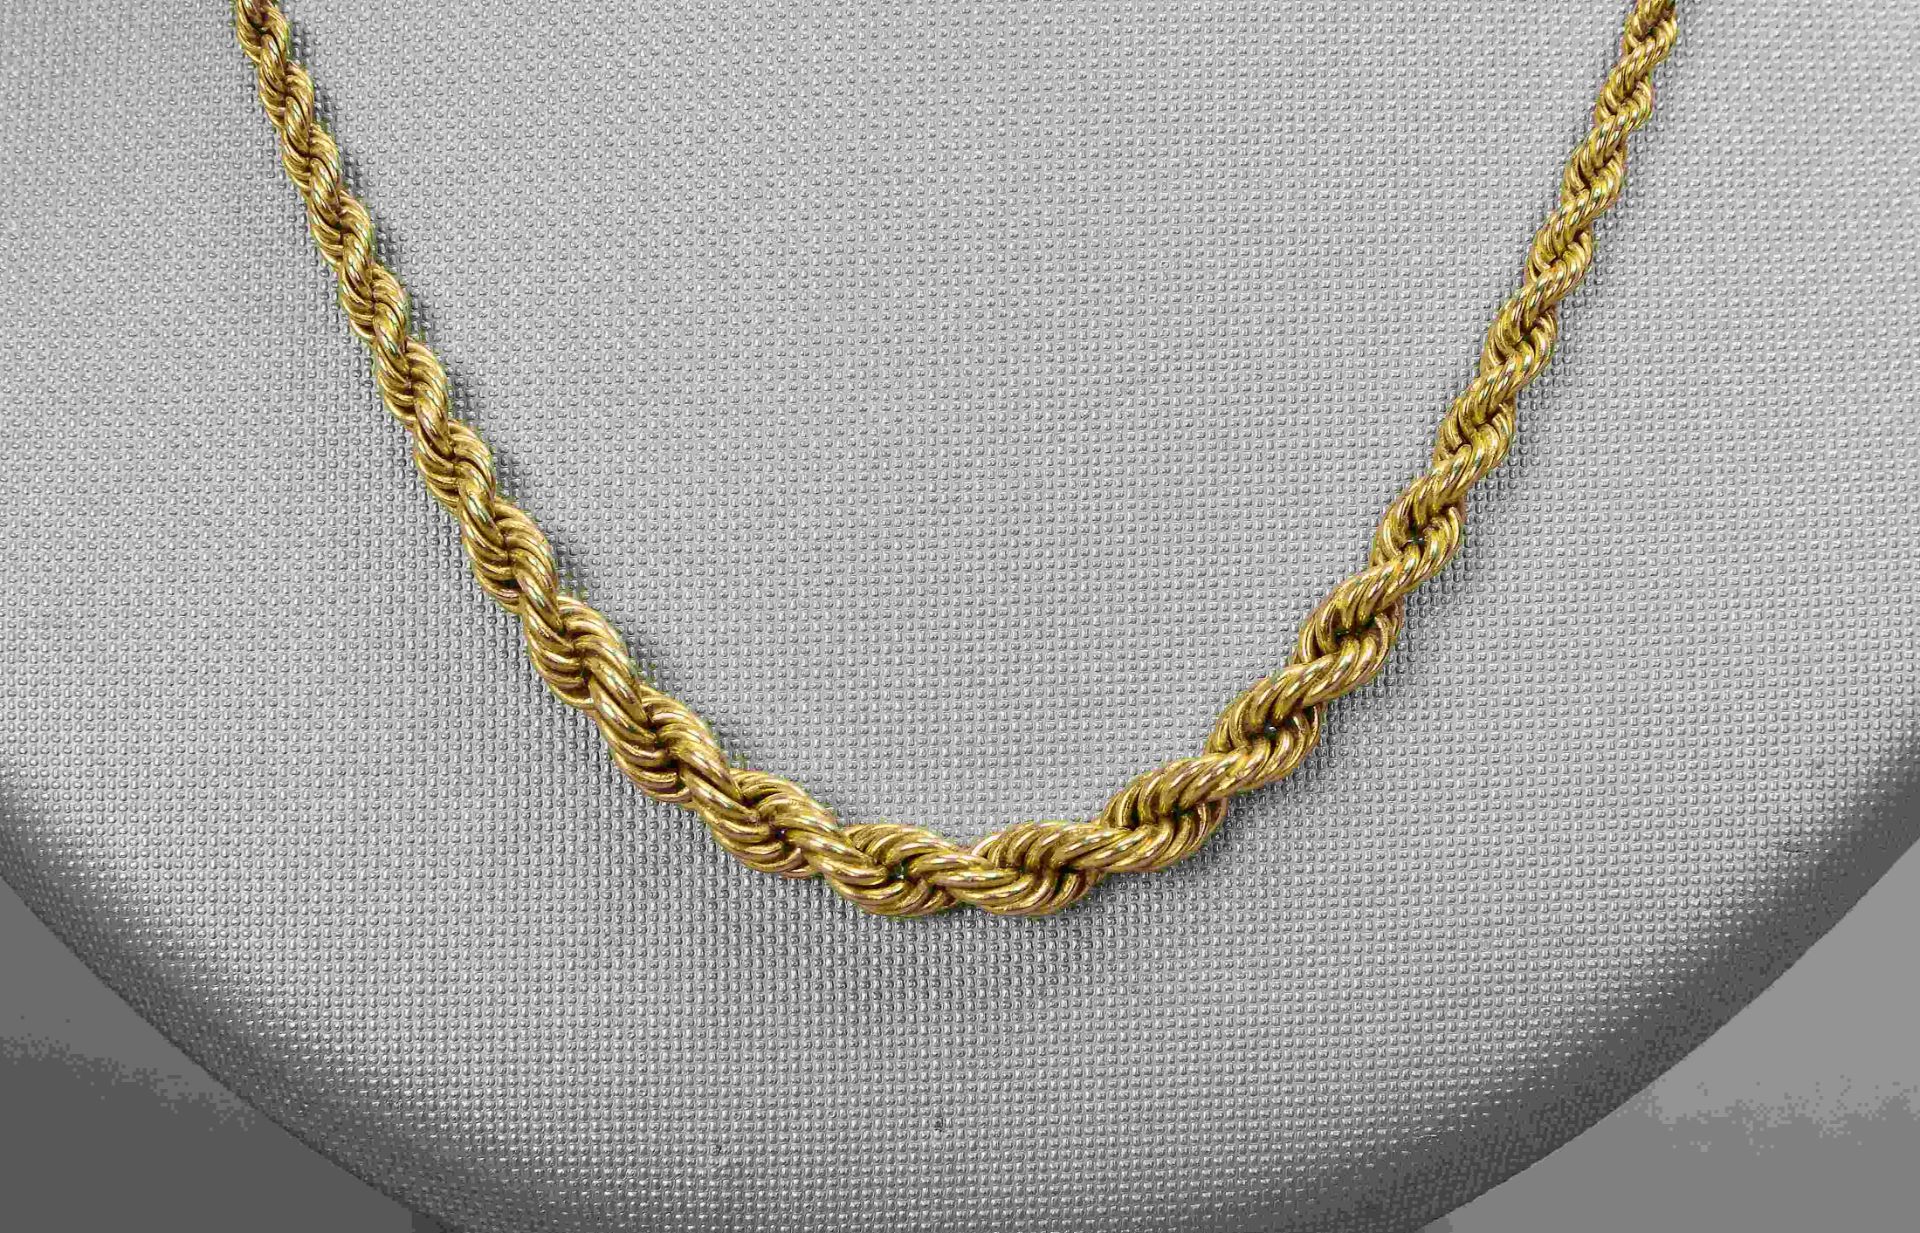 Halskette/Kordelkette, 585 GG, verlaufend, mit Karabinerschließe; Länge 42 cm, Gewicht 8,50 g